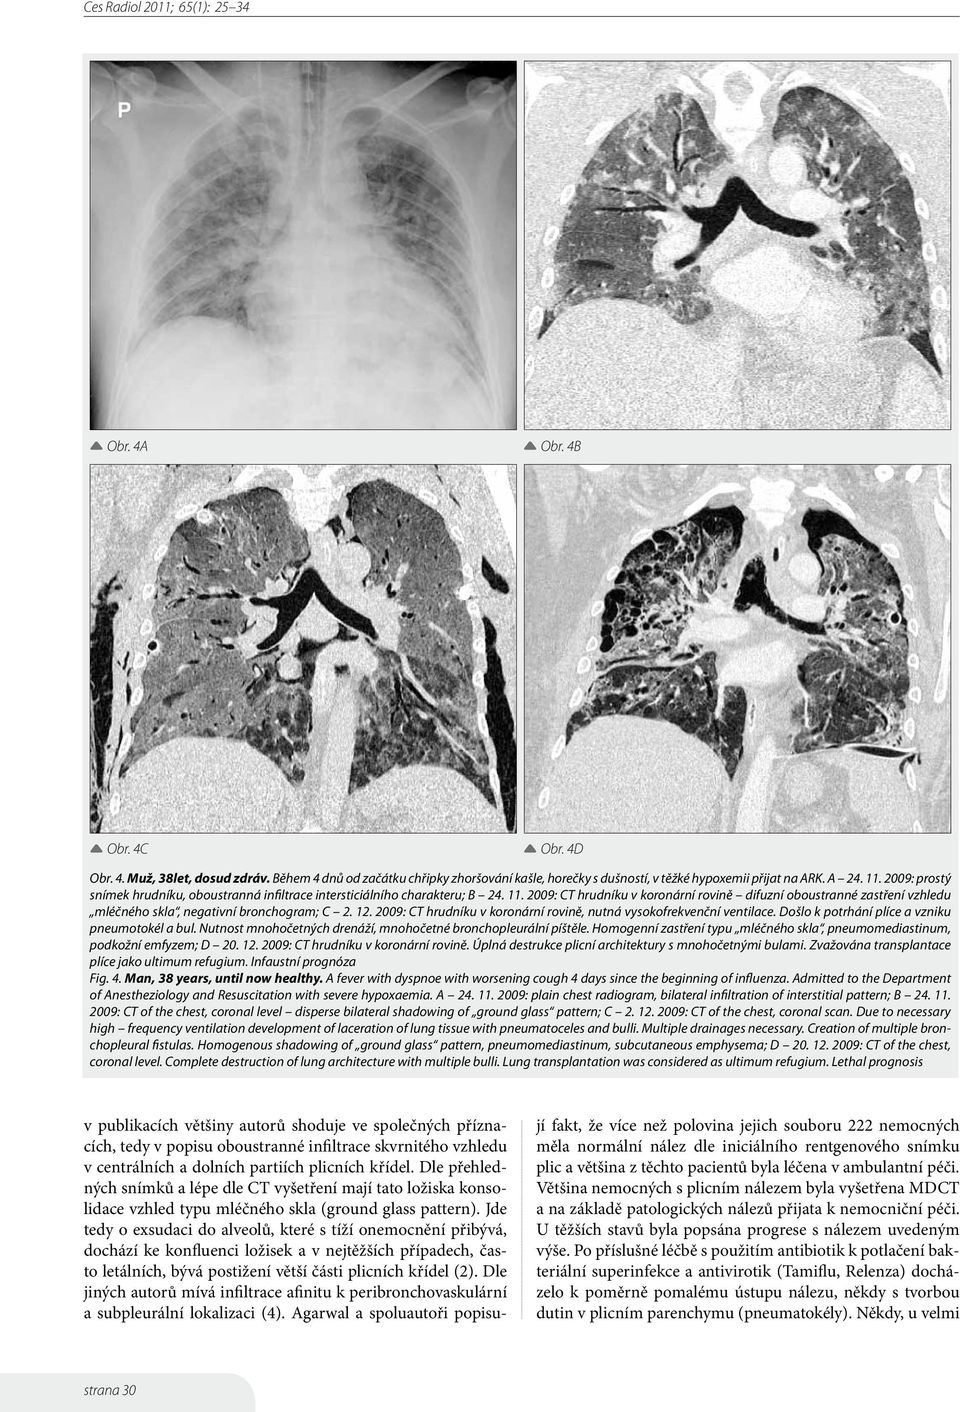 2009: CT hrudníku v koronární rovině difuzní oboustranné zastření vzhledu mléčného skla, negativní bronchogram; C 2. 12. 2009: CT hrudníku v koronární rovině, nutná vysokofrekvenční ventilace.